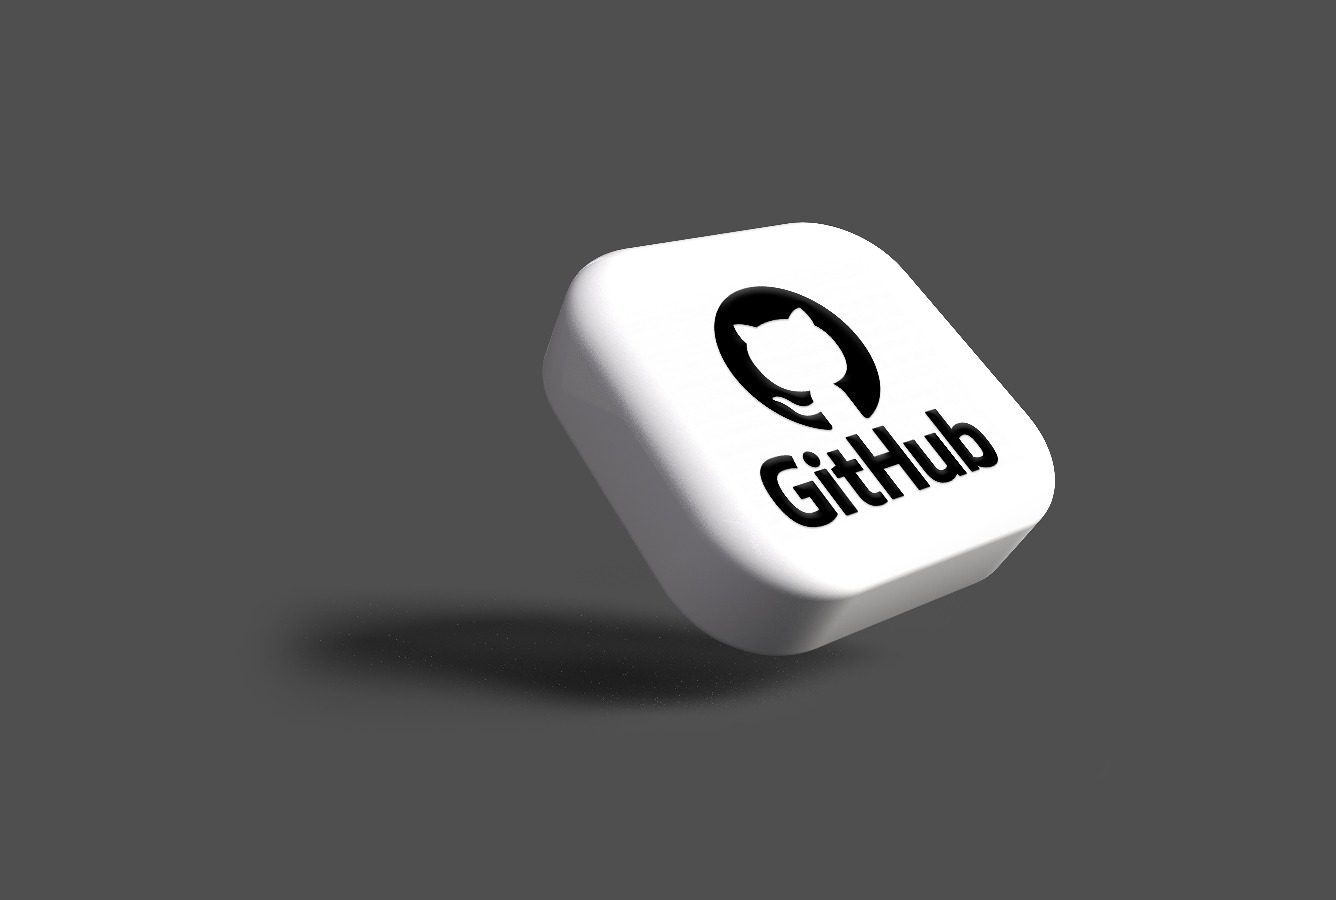 Github student developer pack